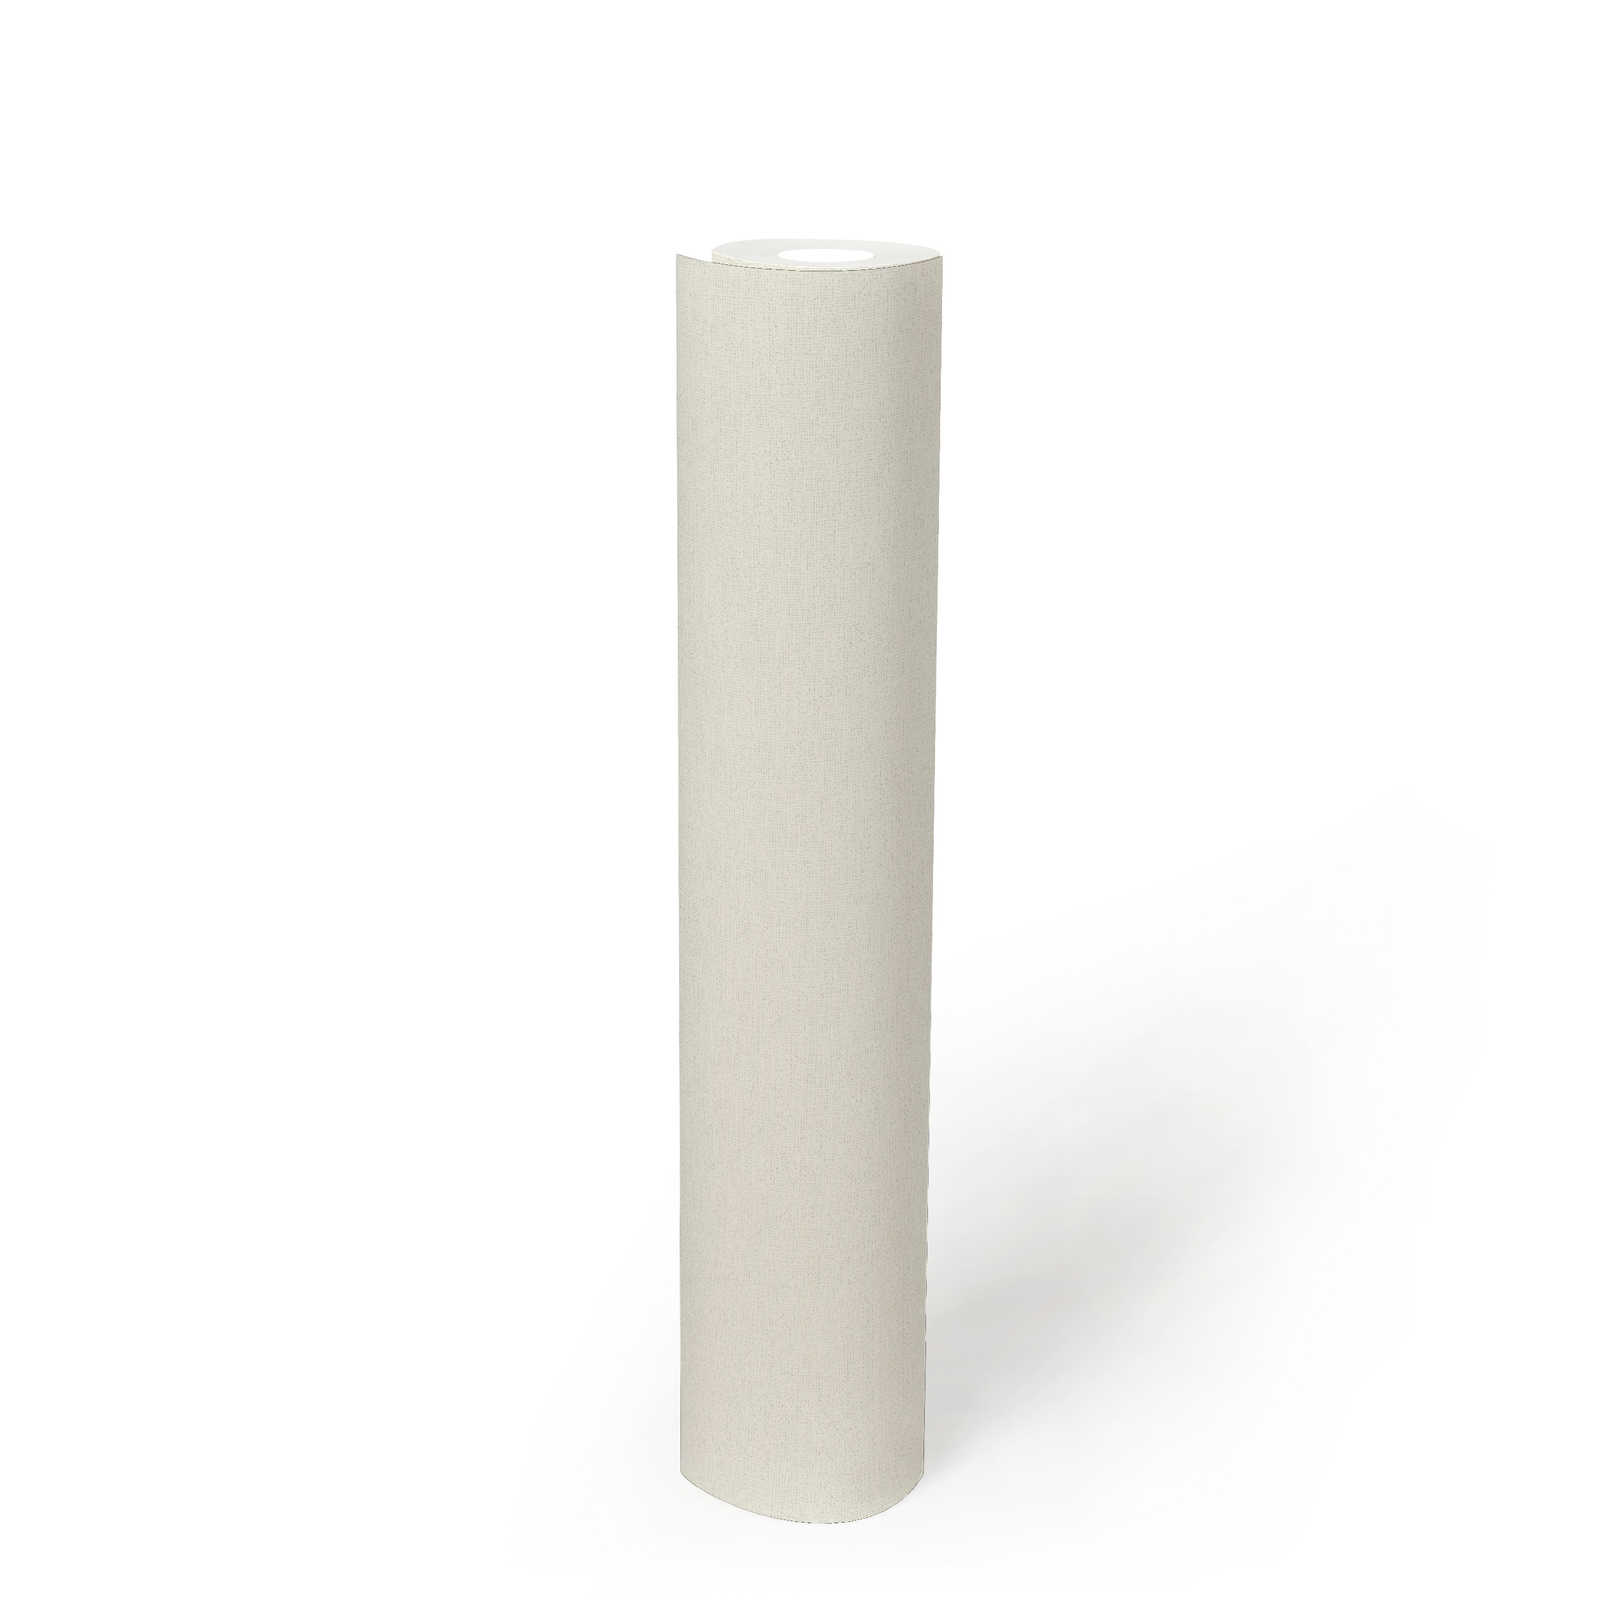             Unitapete Creme-Weiß von MICHASLKY mit Textilstruktur
        